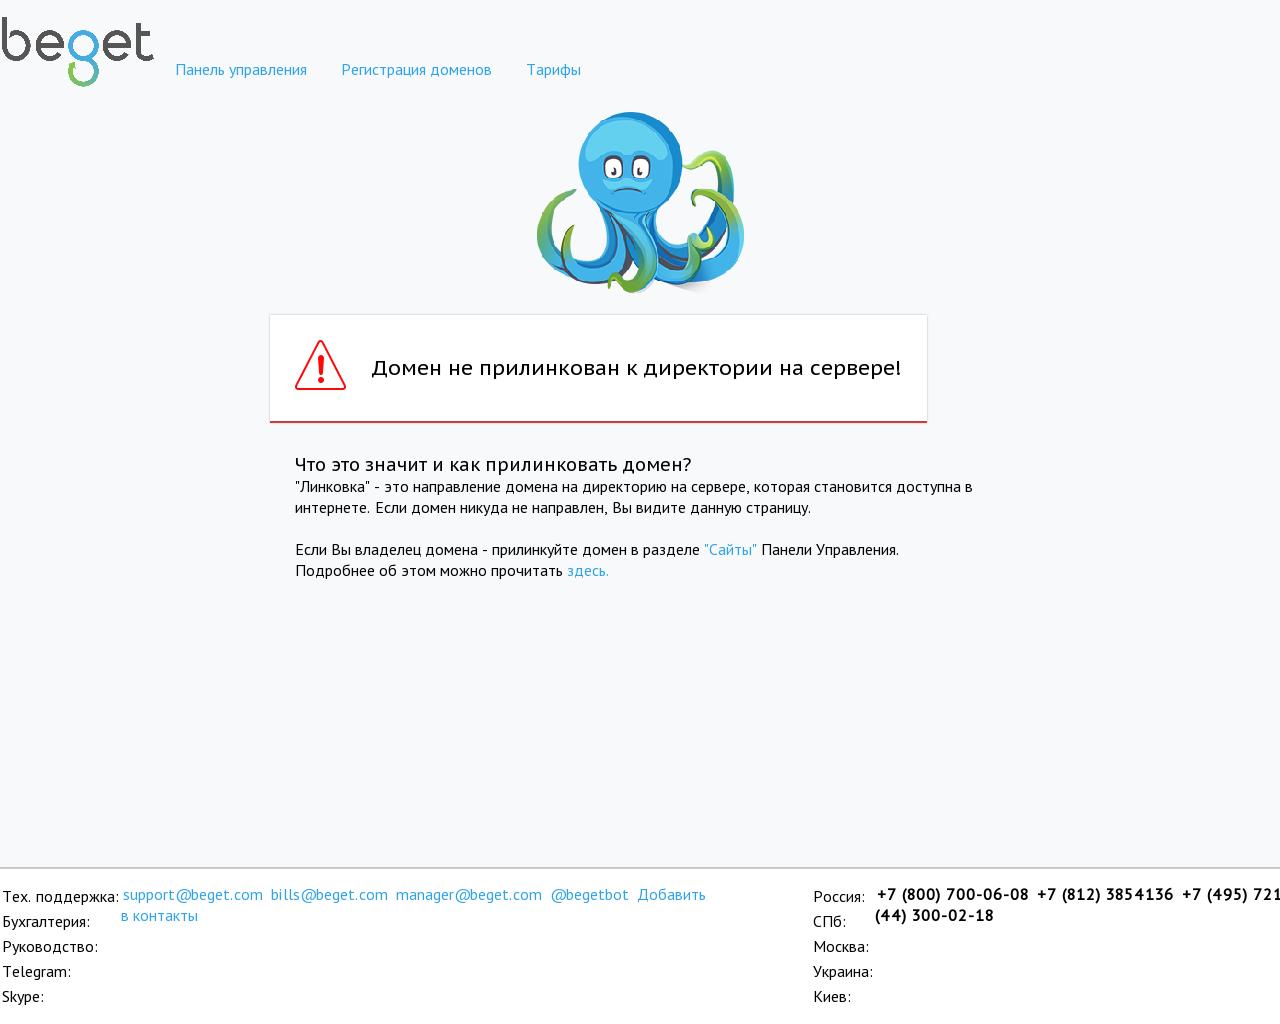 Изображение сайта insplain.ru в разрешении 1280x1024